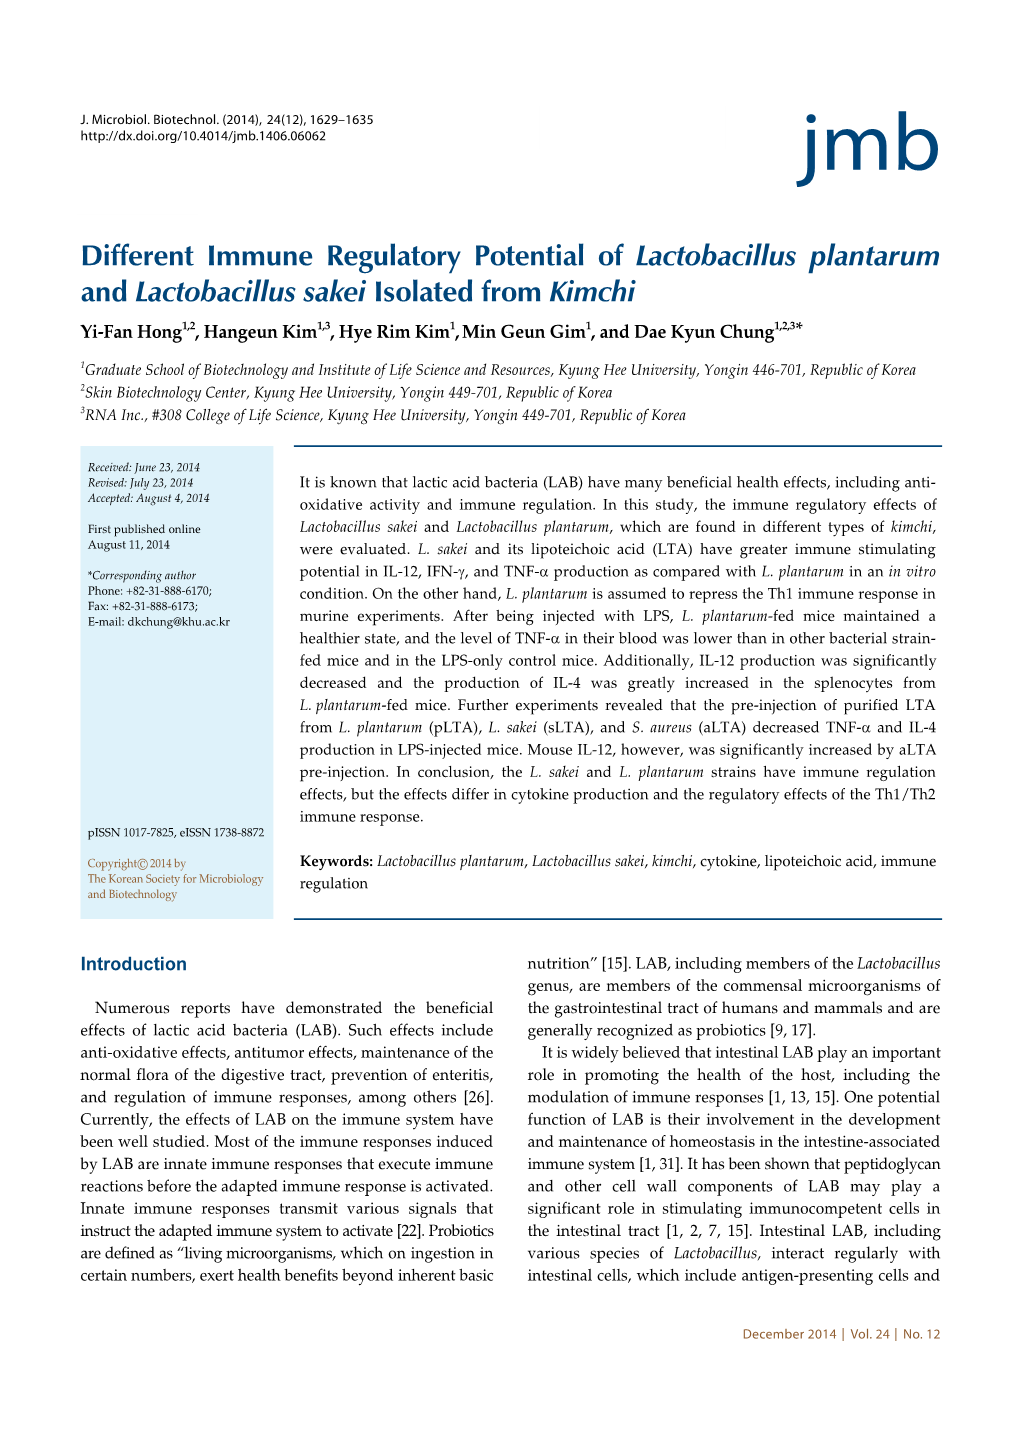 Different Immune Regulatory Potential of Lactobacillus Plantarum And